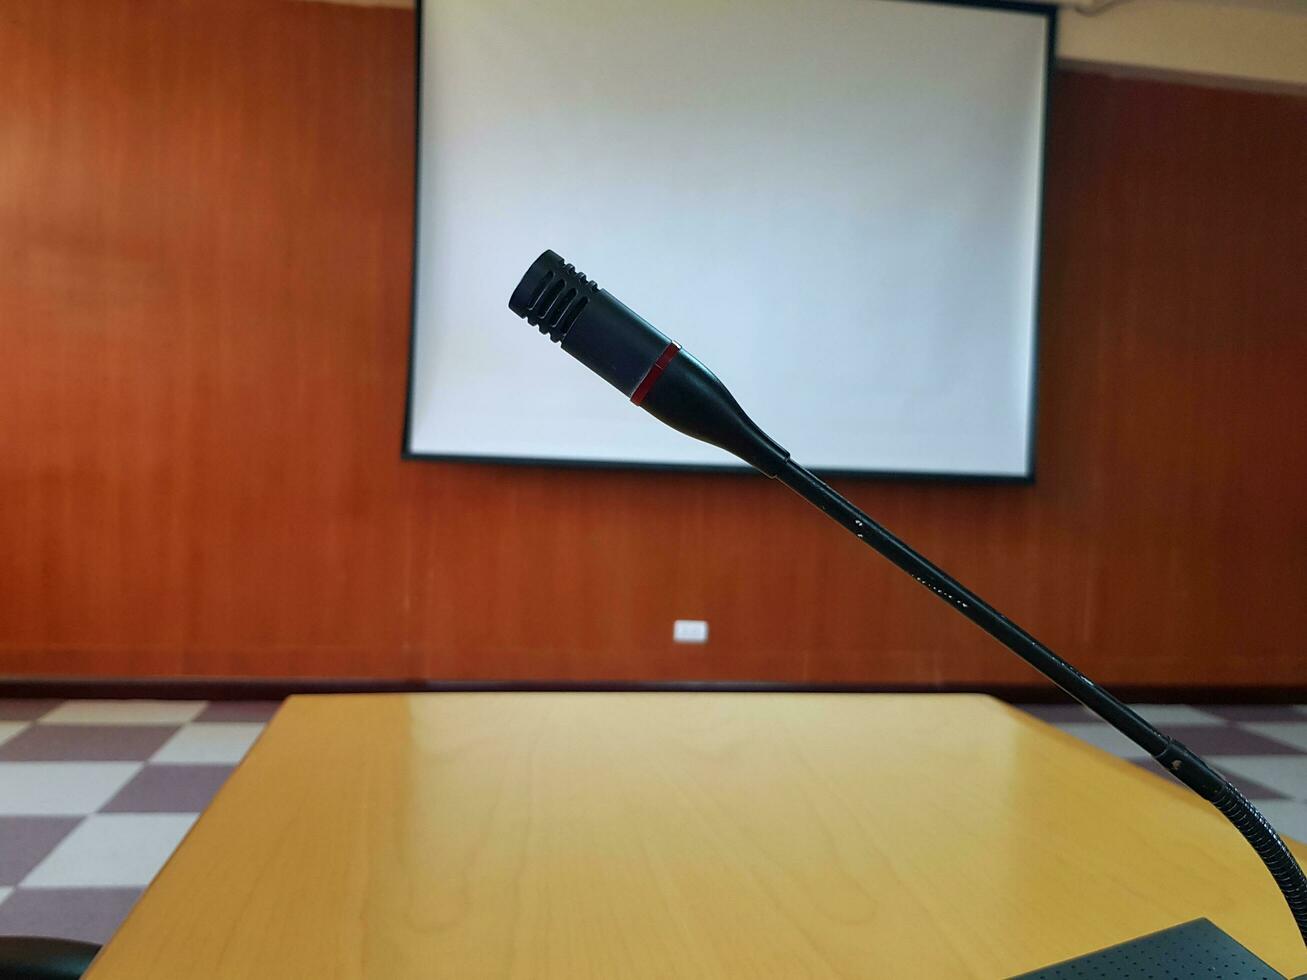 nero microfono su di legno scrivania per parlando o presentazione nel conferenza o incontro camera con bianca proiettore tavola sfocato sfondo. dispositivo e attrezzo foto